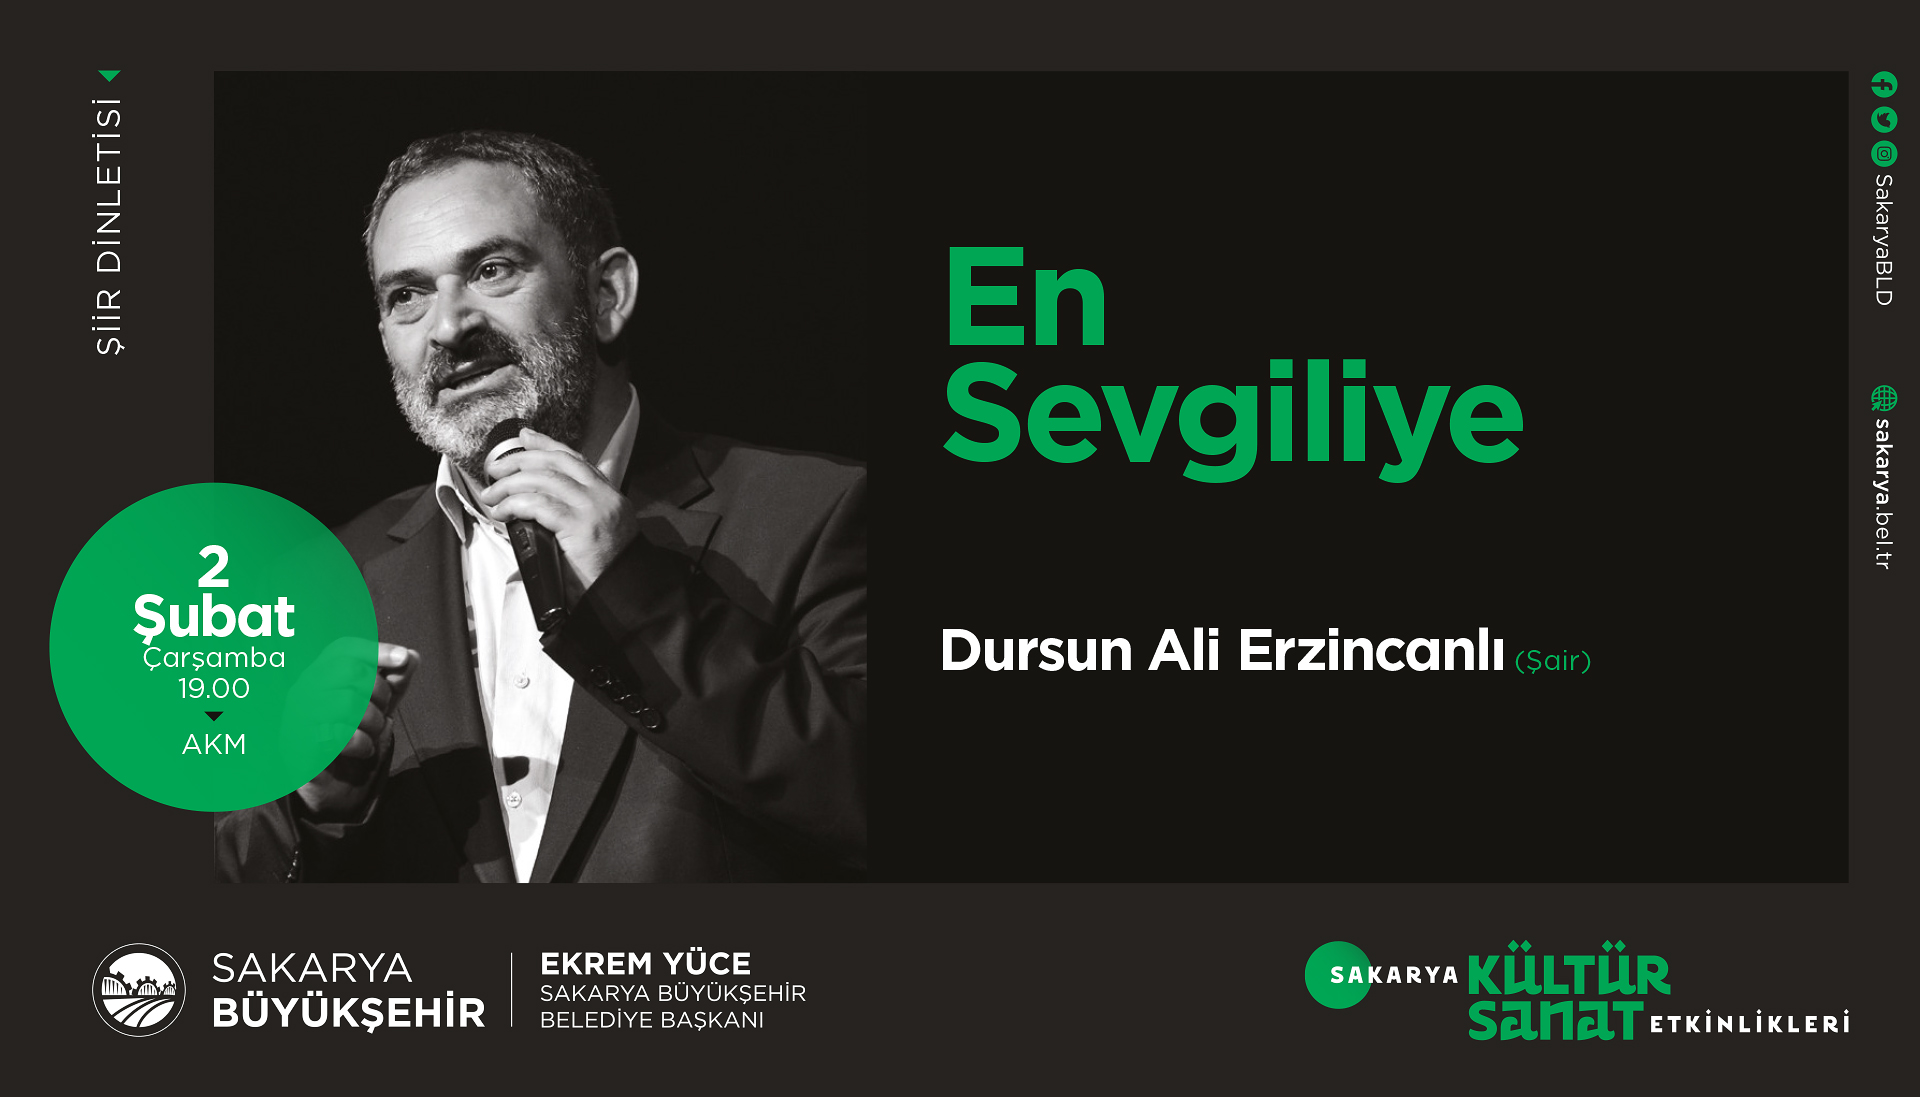 Kültür sanat etkinliklerinin konuğu Dursun Ali Erzincanlı